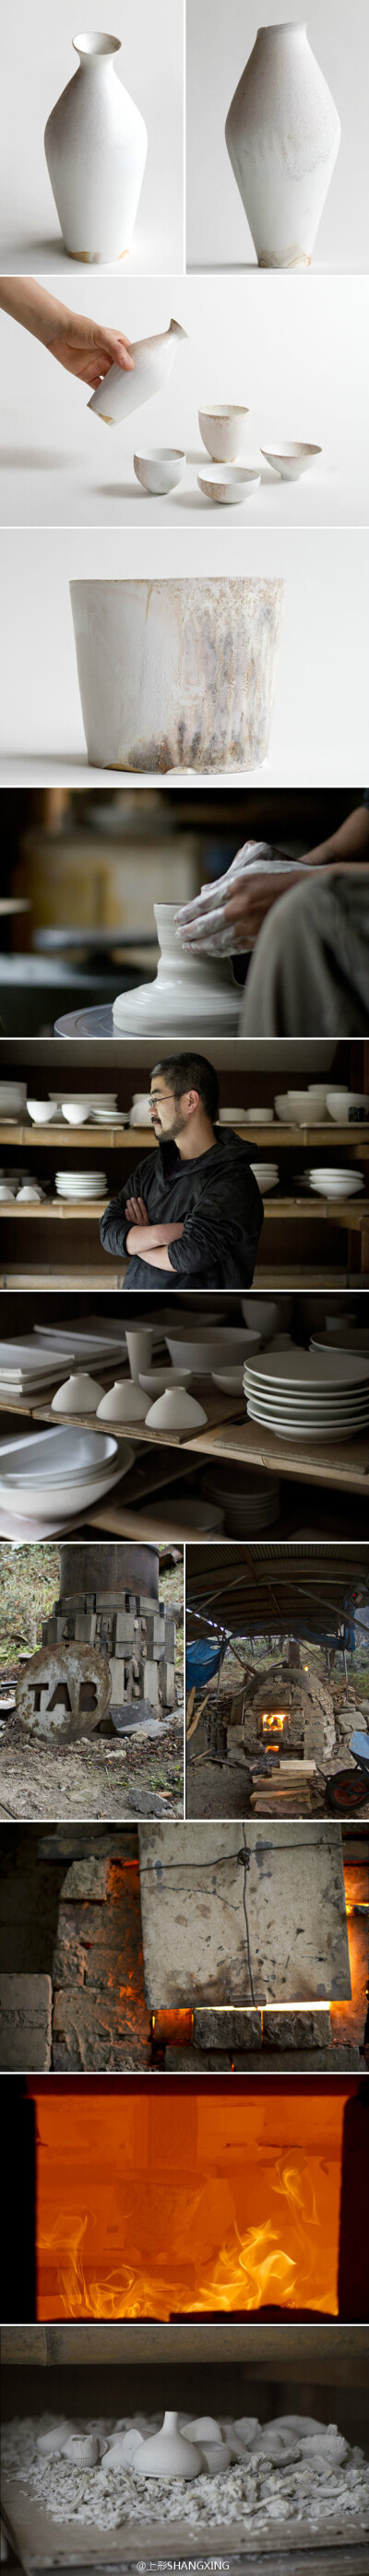 日本陶艺家田淵太郎 Taro TABUCHI 柴窑陶瓷作品：http://panorama-index.jp/tabuchi_taro/works/－－「山形」SHANXING是一个创立于2012年的独立家具品牌。「山形」的作品包括家具、家居用品、皮革制品，及与家有关的…